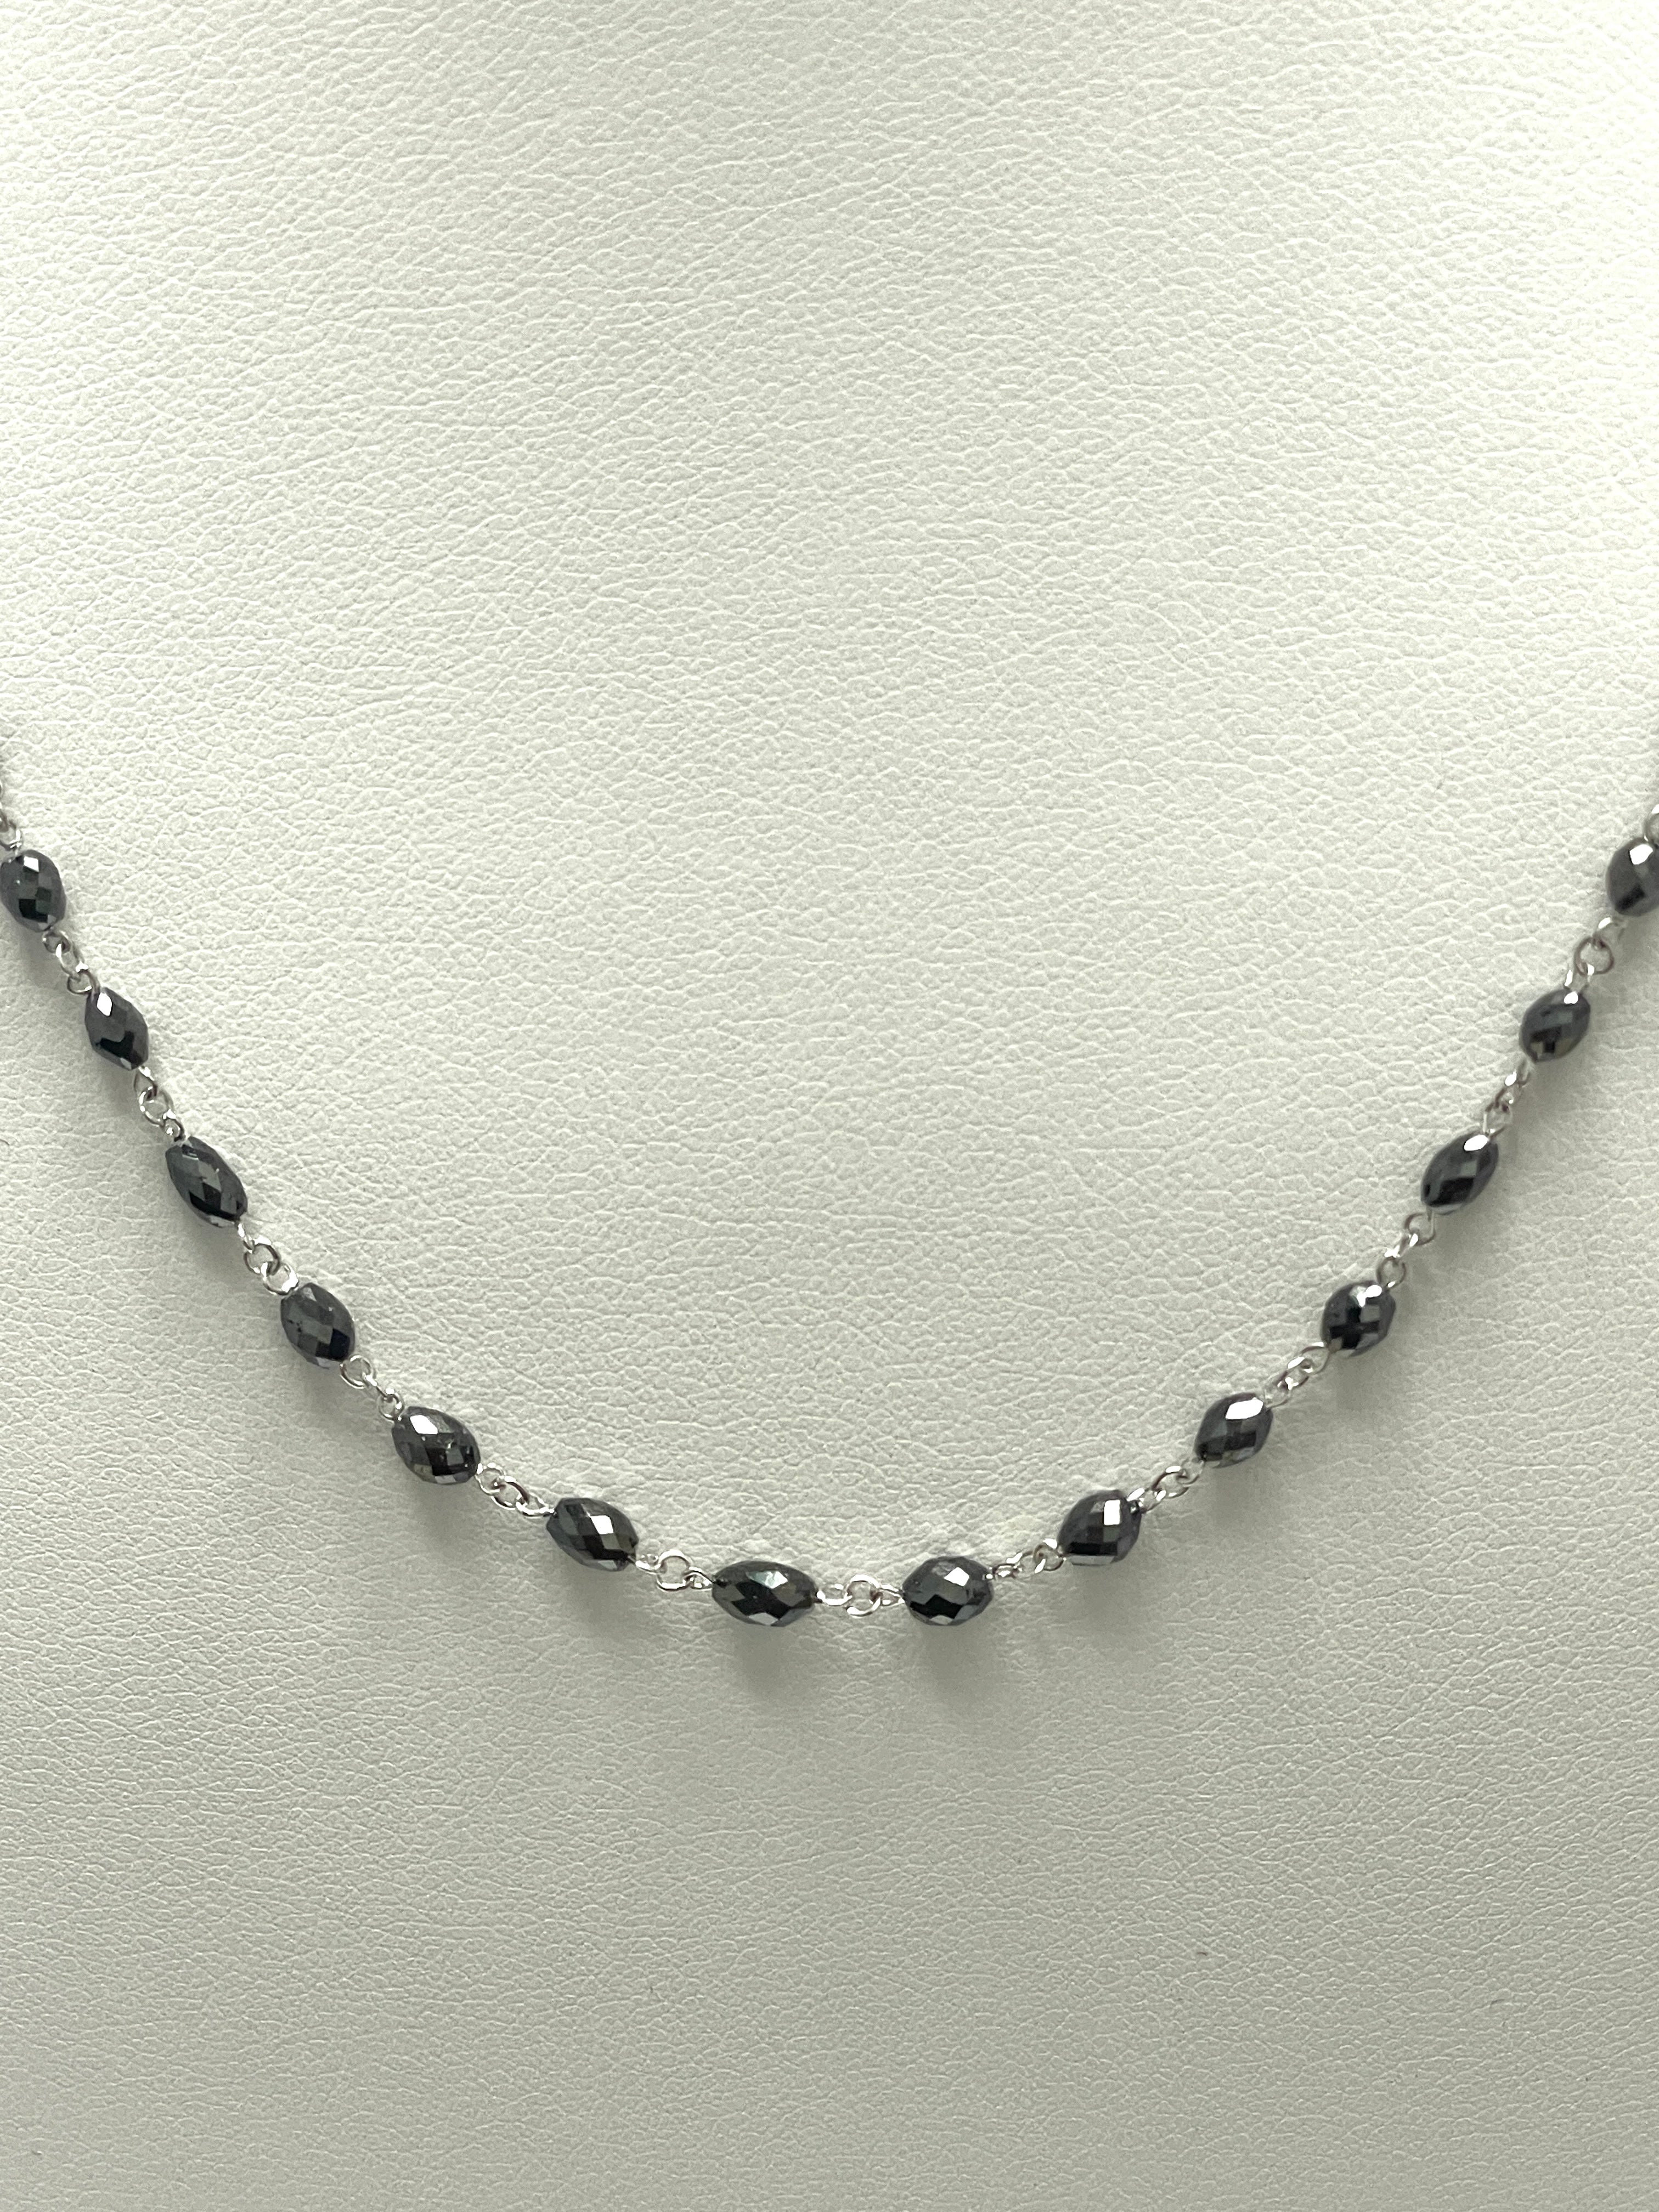 Black Diamond Oval Beads, 18K White Gold Necklace, Diamond Faceted Beads, 18" Inch Necklace, Oval Cut Beads Necklace